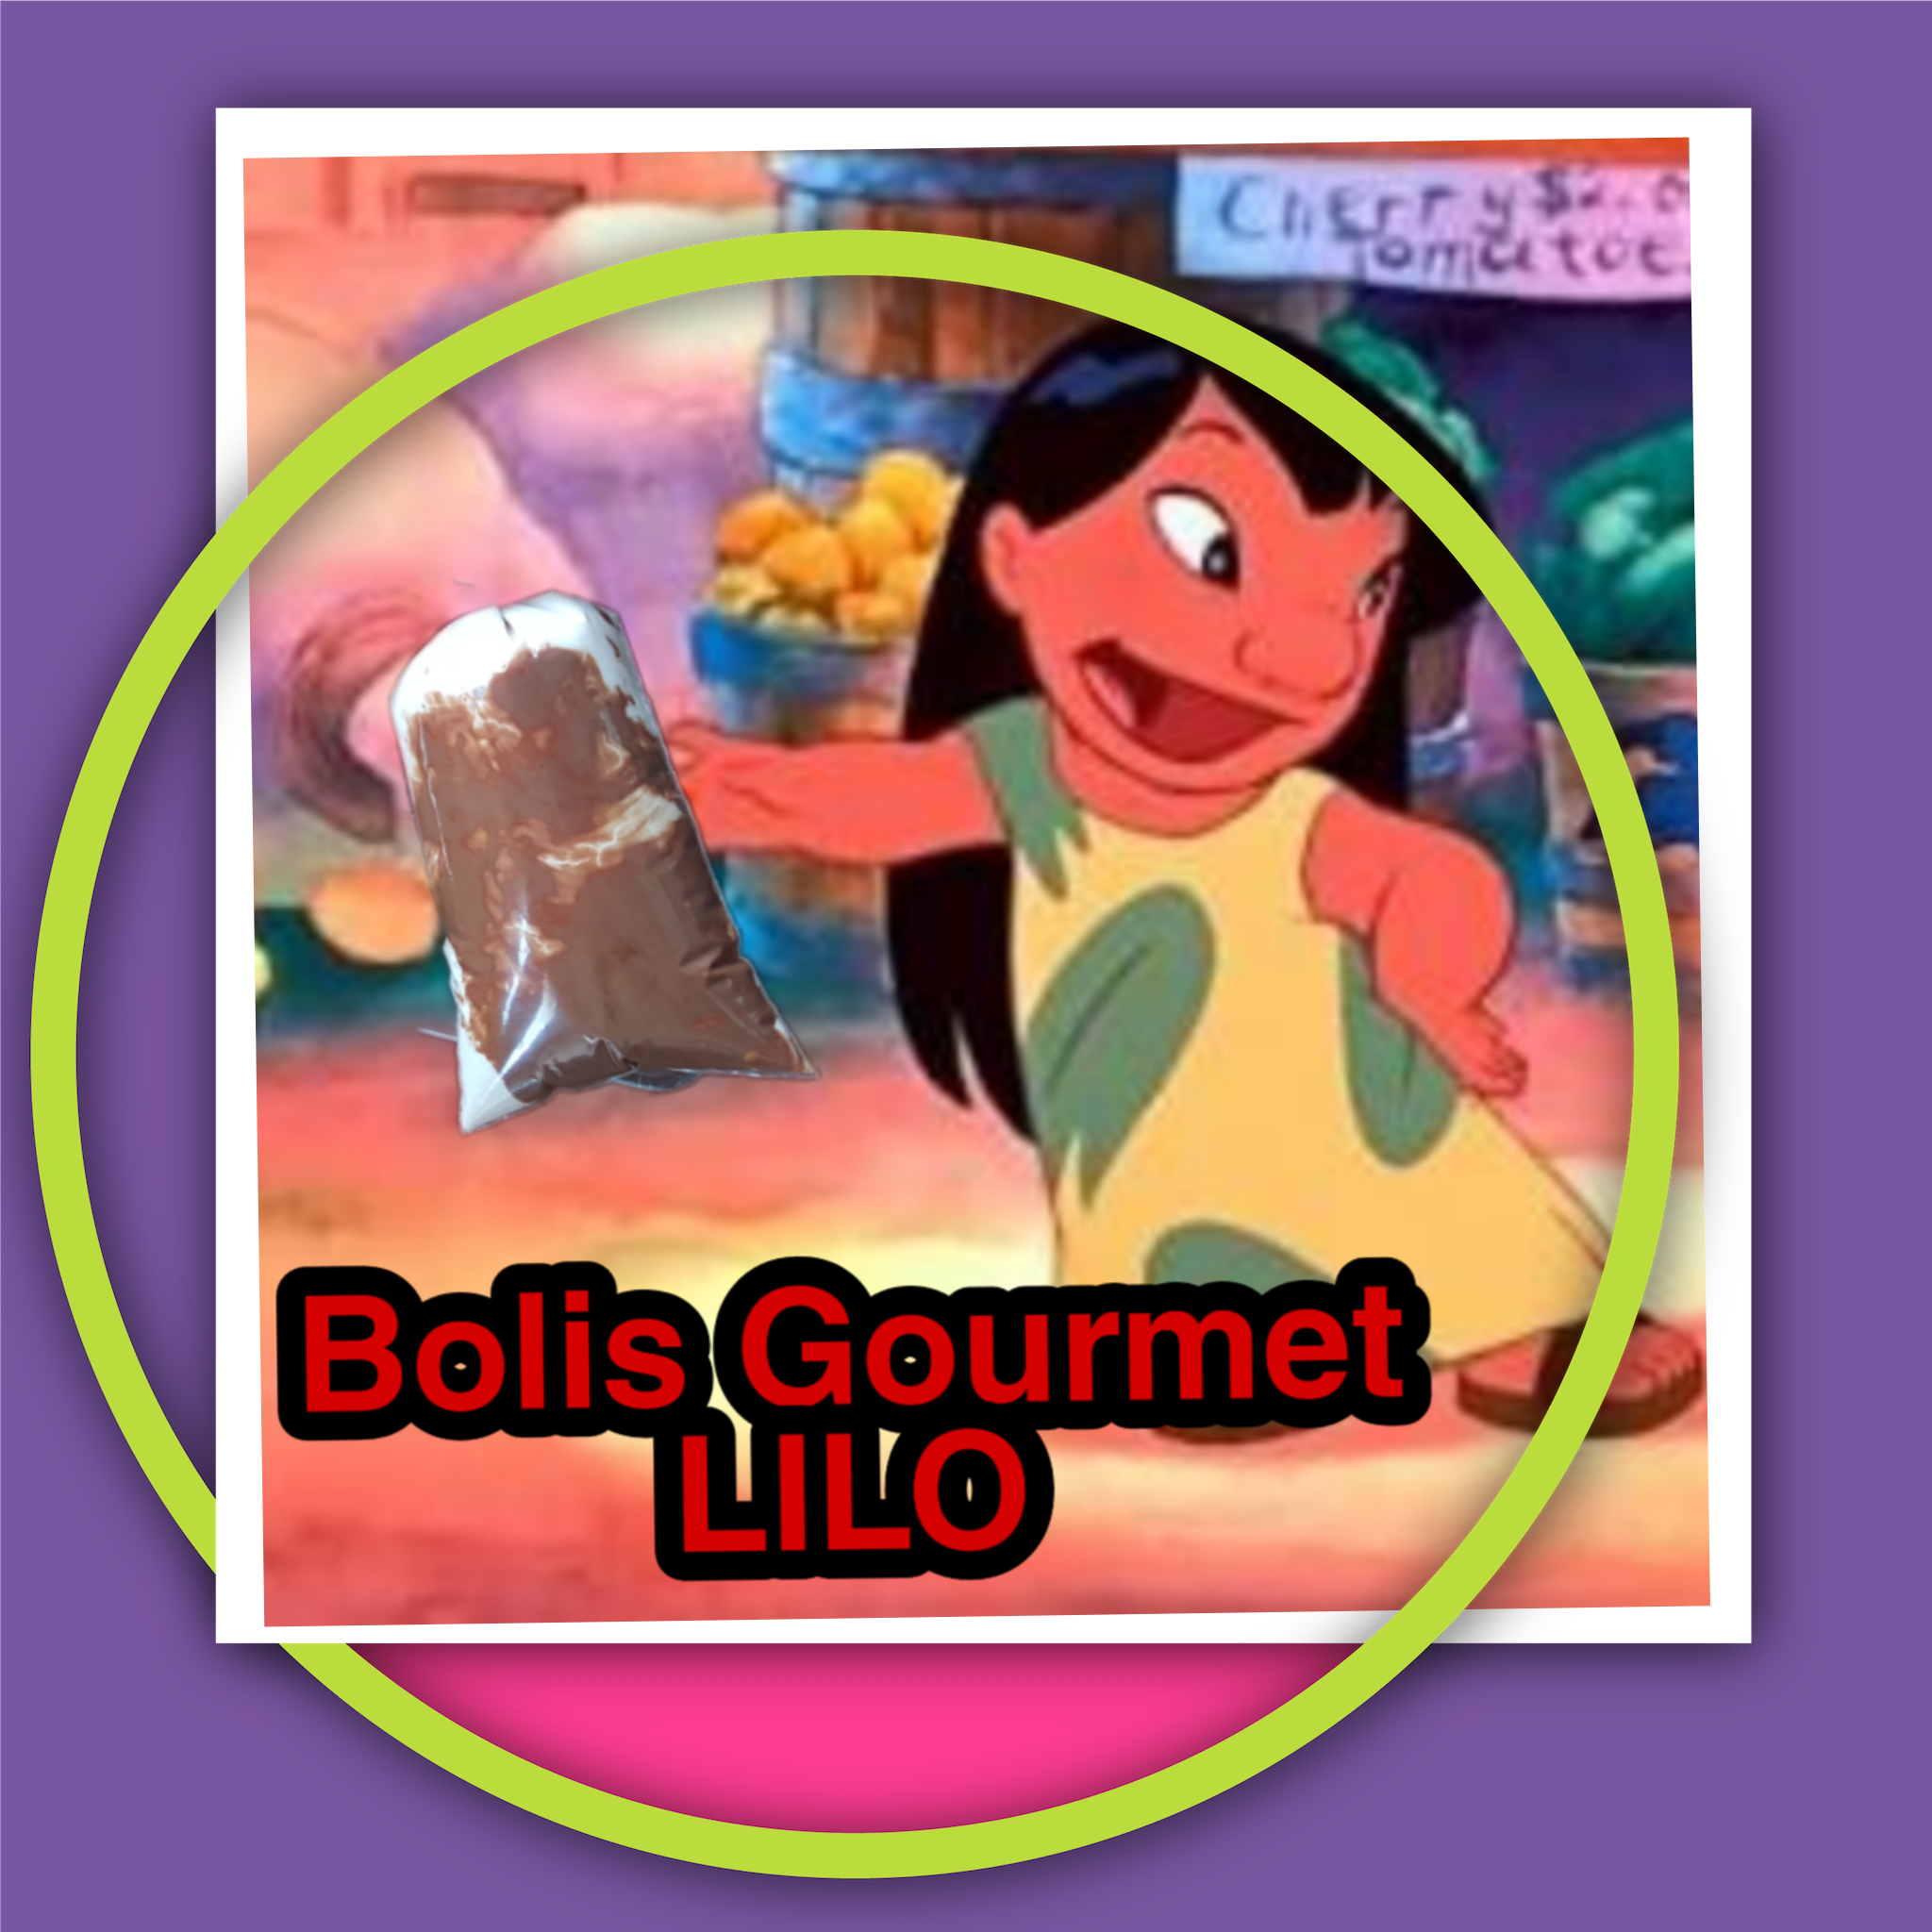 Bolis Gourmet Lilo